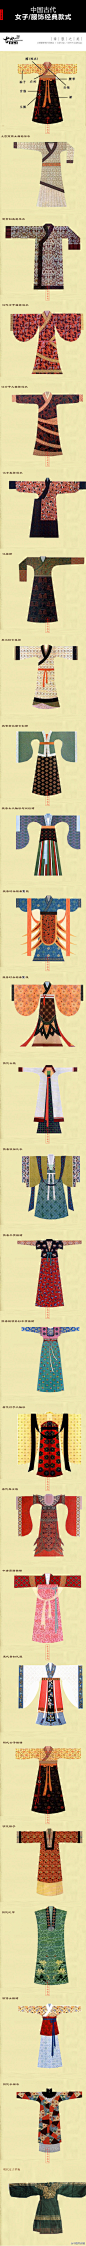 【汉服】中国古代服装经典款式（女装篇）！(via 古典新风尚)